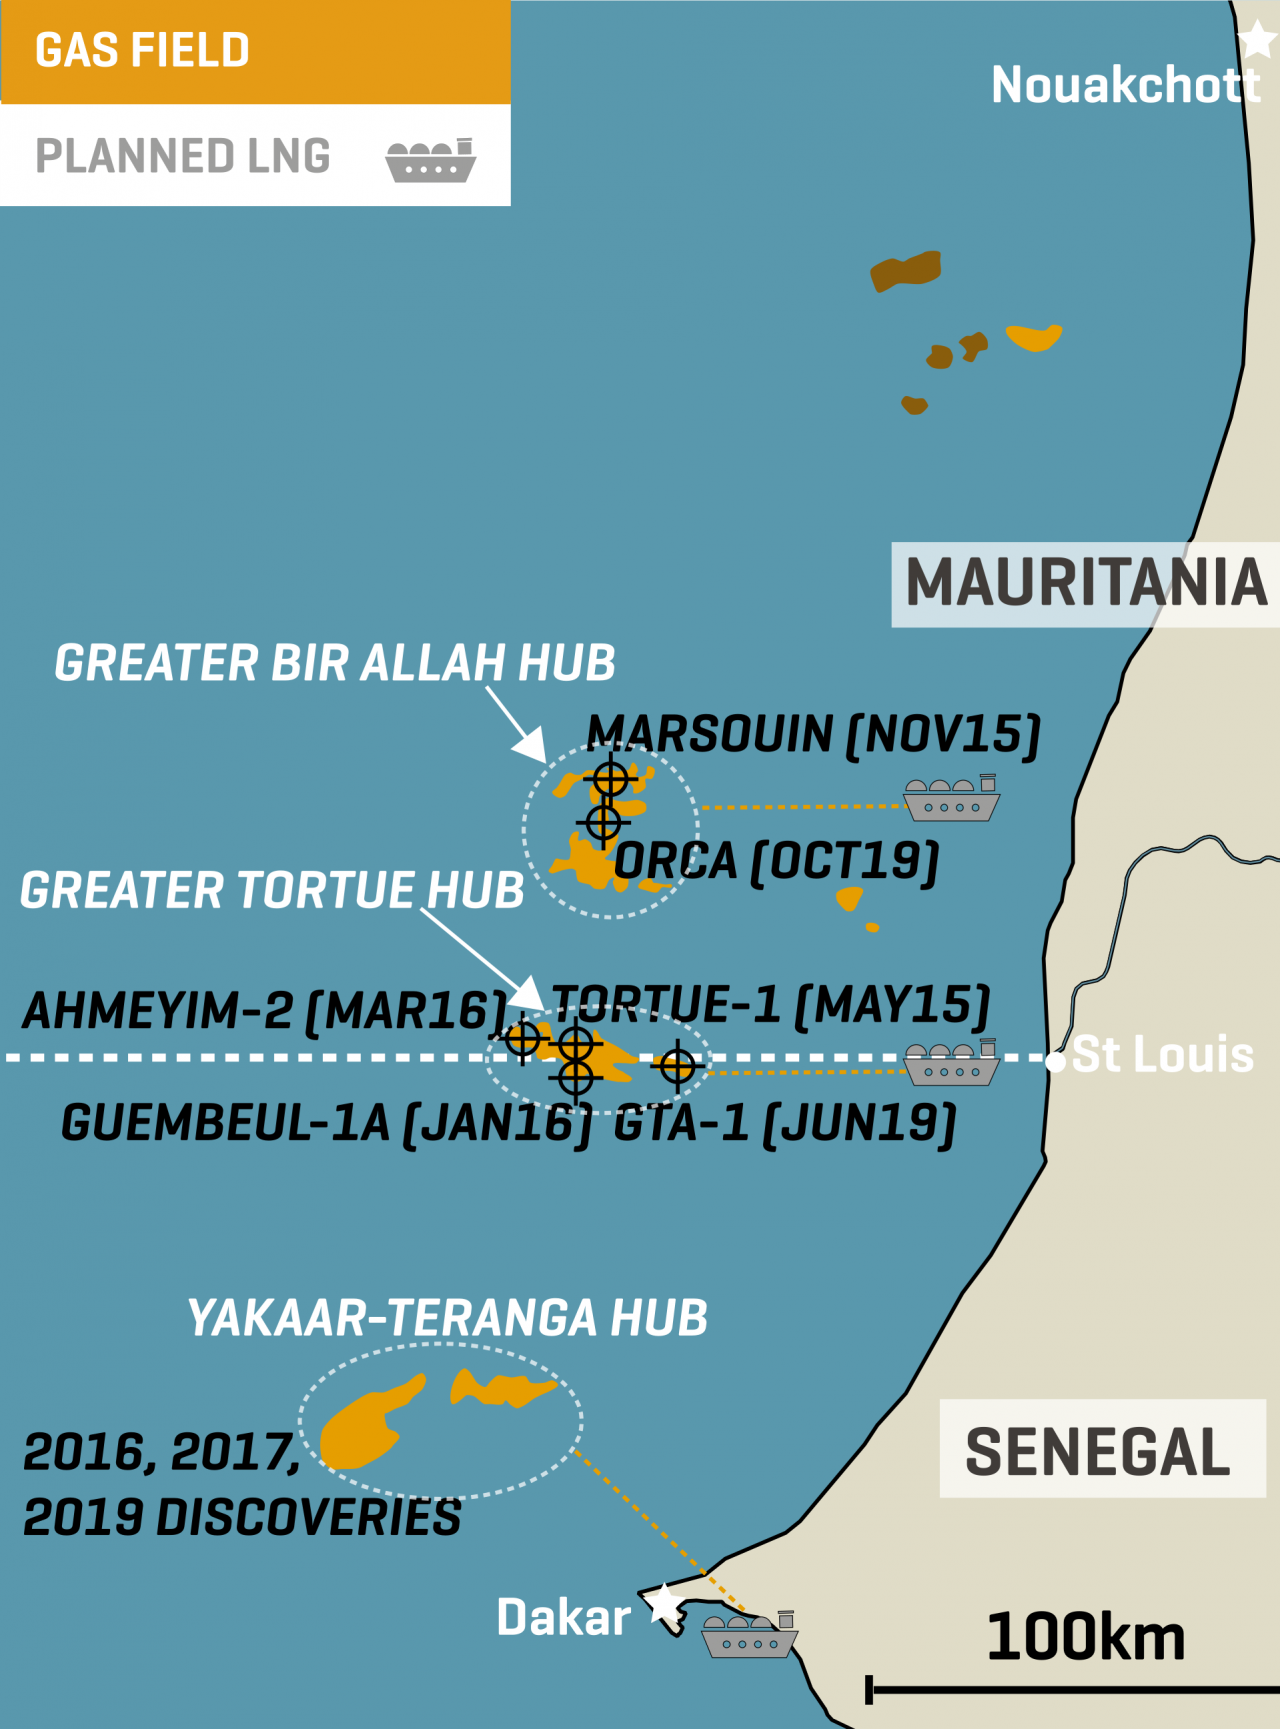 BP/Kosmos Mauritania/Senegal LNG Hub Plans